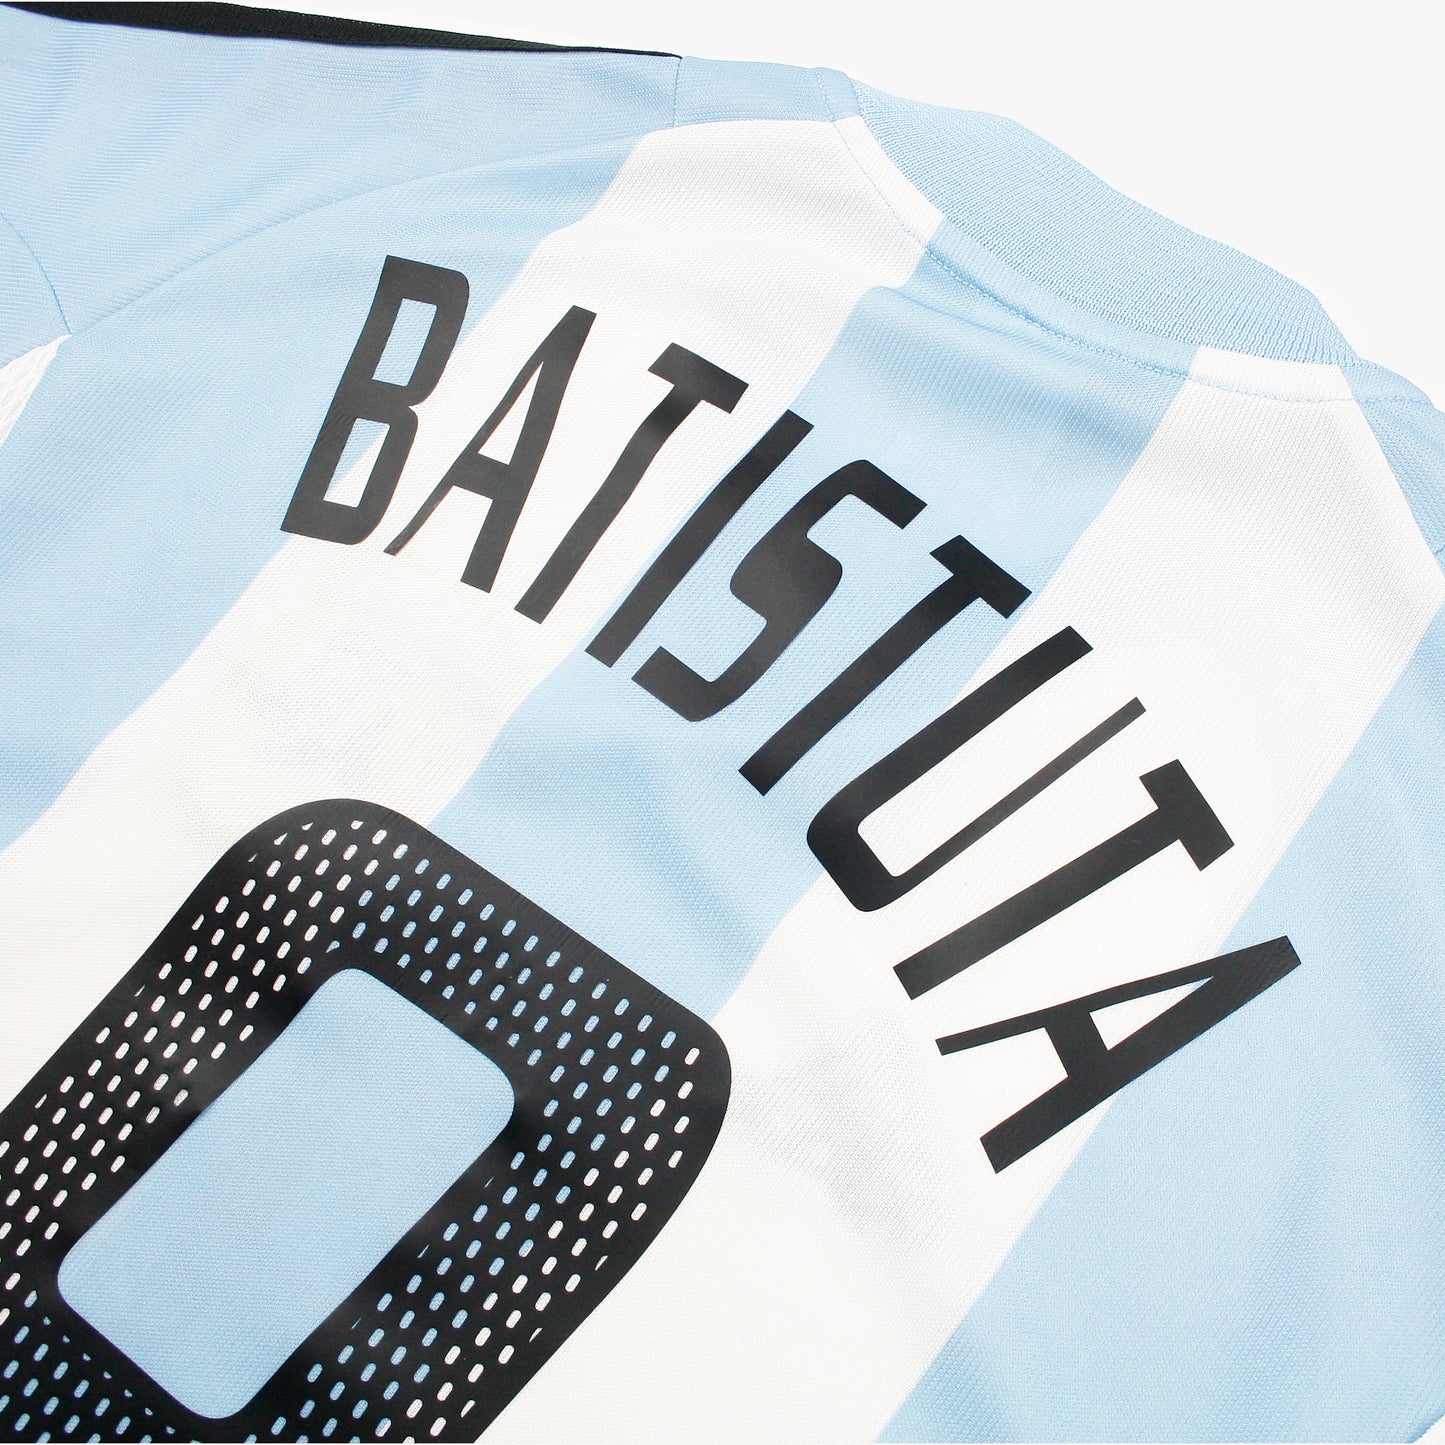 Argentina 02/04 • Camiseta Local • M (L) • Batistuta #9